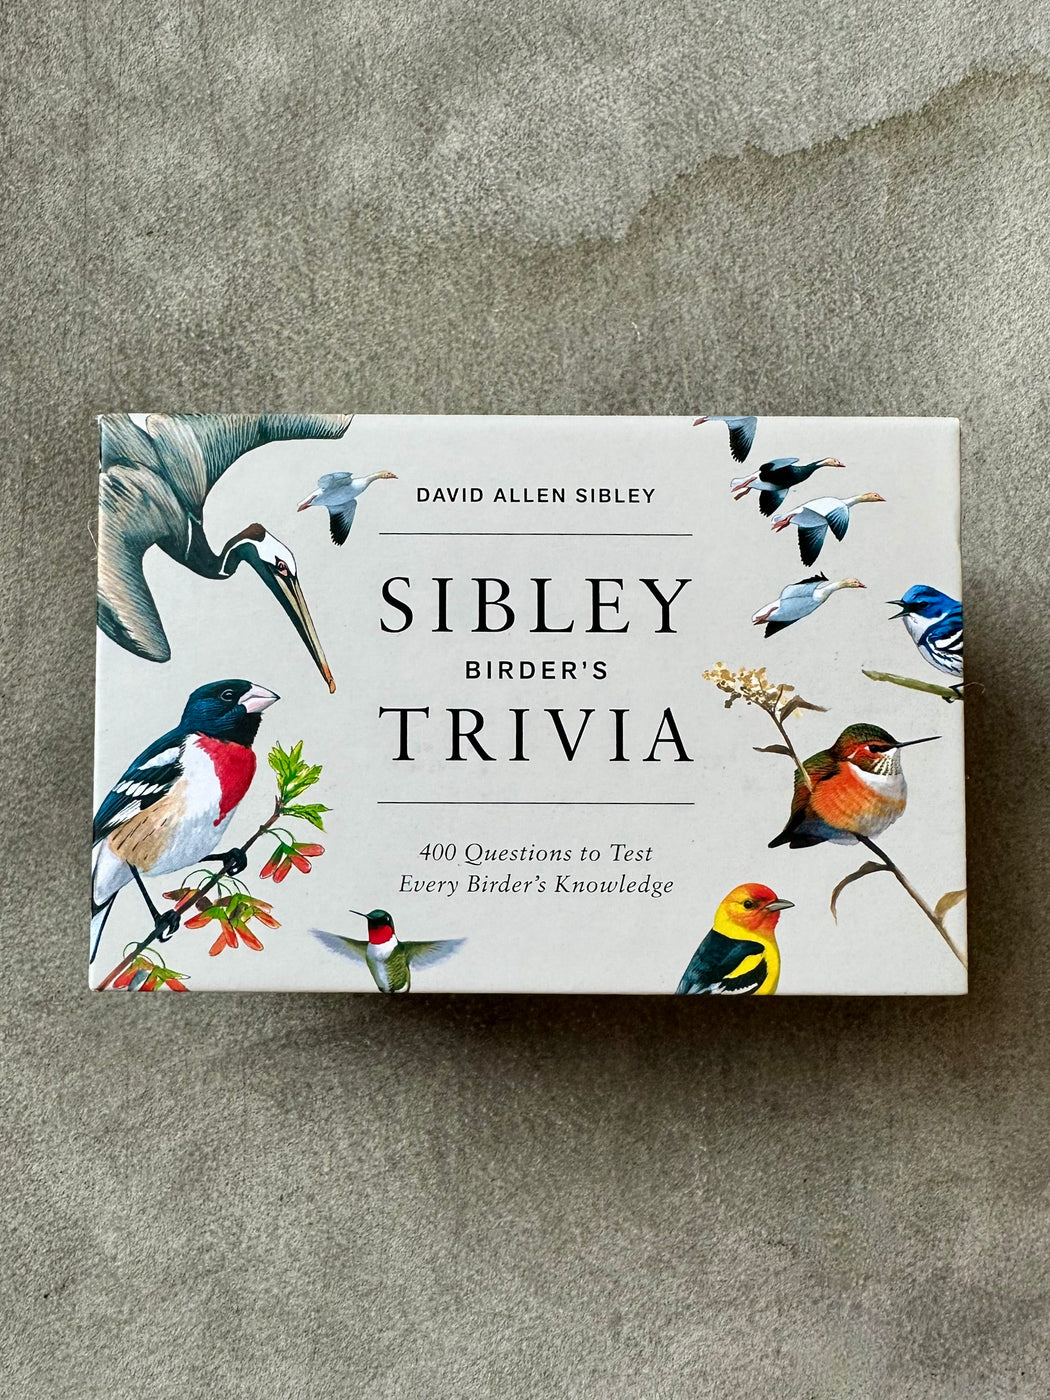 "Sibley Birder's Trivia" by David Allen Sibley